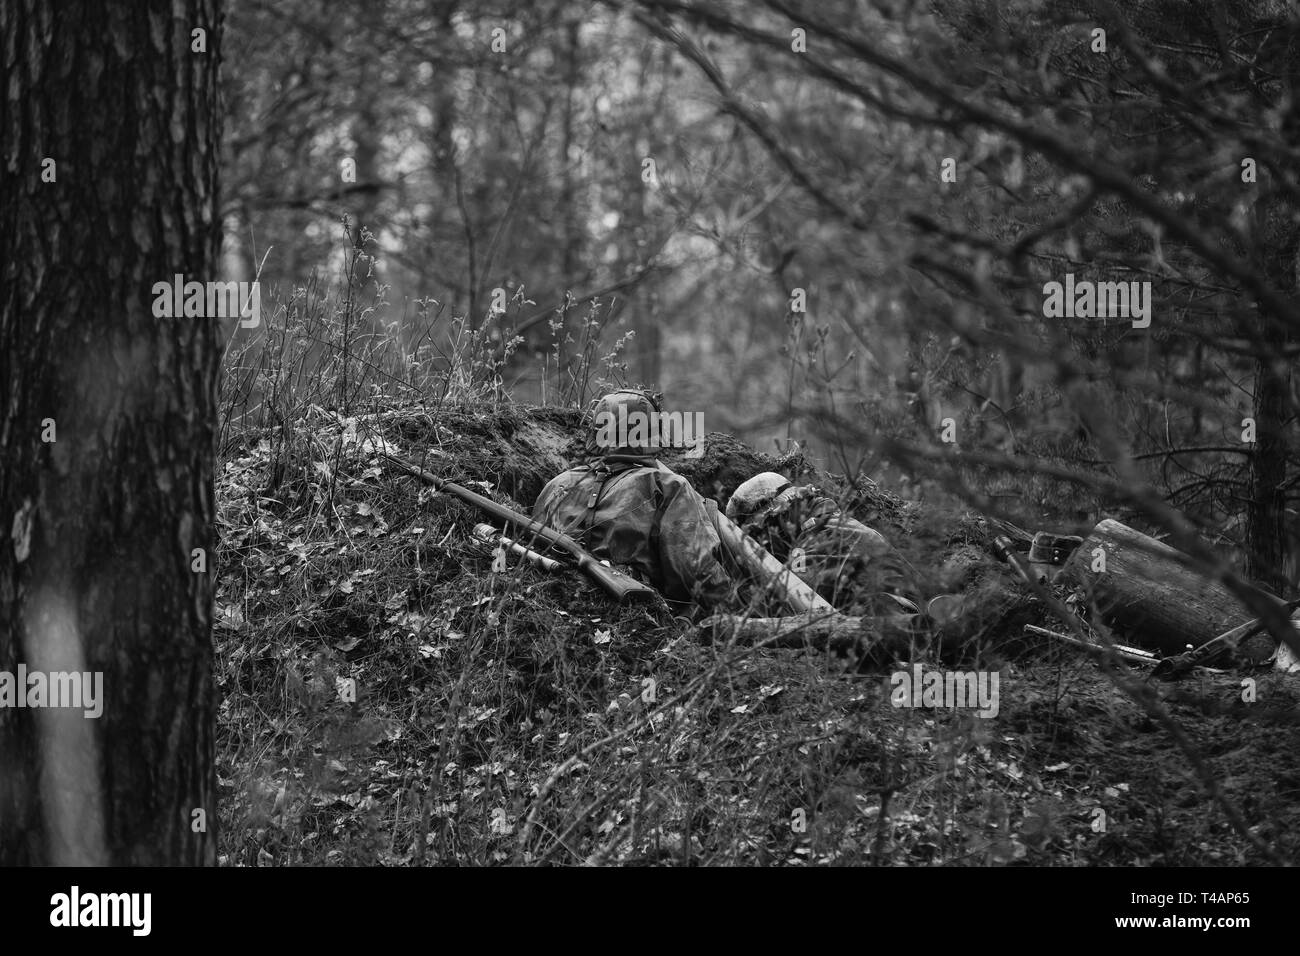 Zwei Re-enactors als Deutsche Wehrmacht Infanterie Soldaten im Zweiten Weltkrieg versteckt Sitzen mit Gewehr Waffe in einen Hinterhalt in Graben in Wald gekleidet. Foto Stockfoto